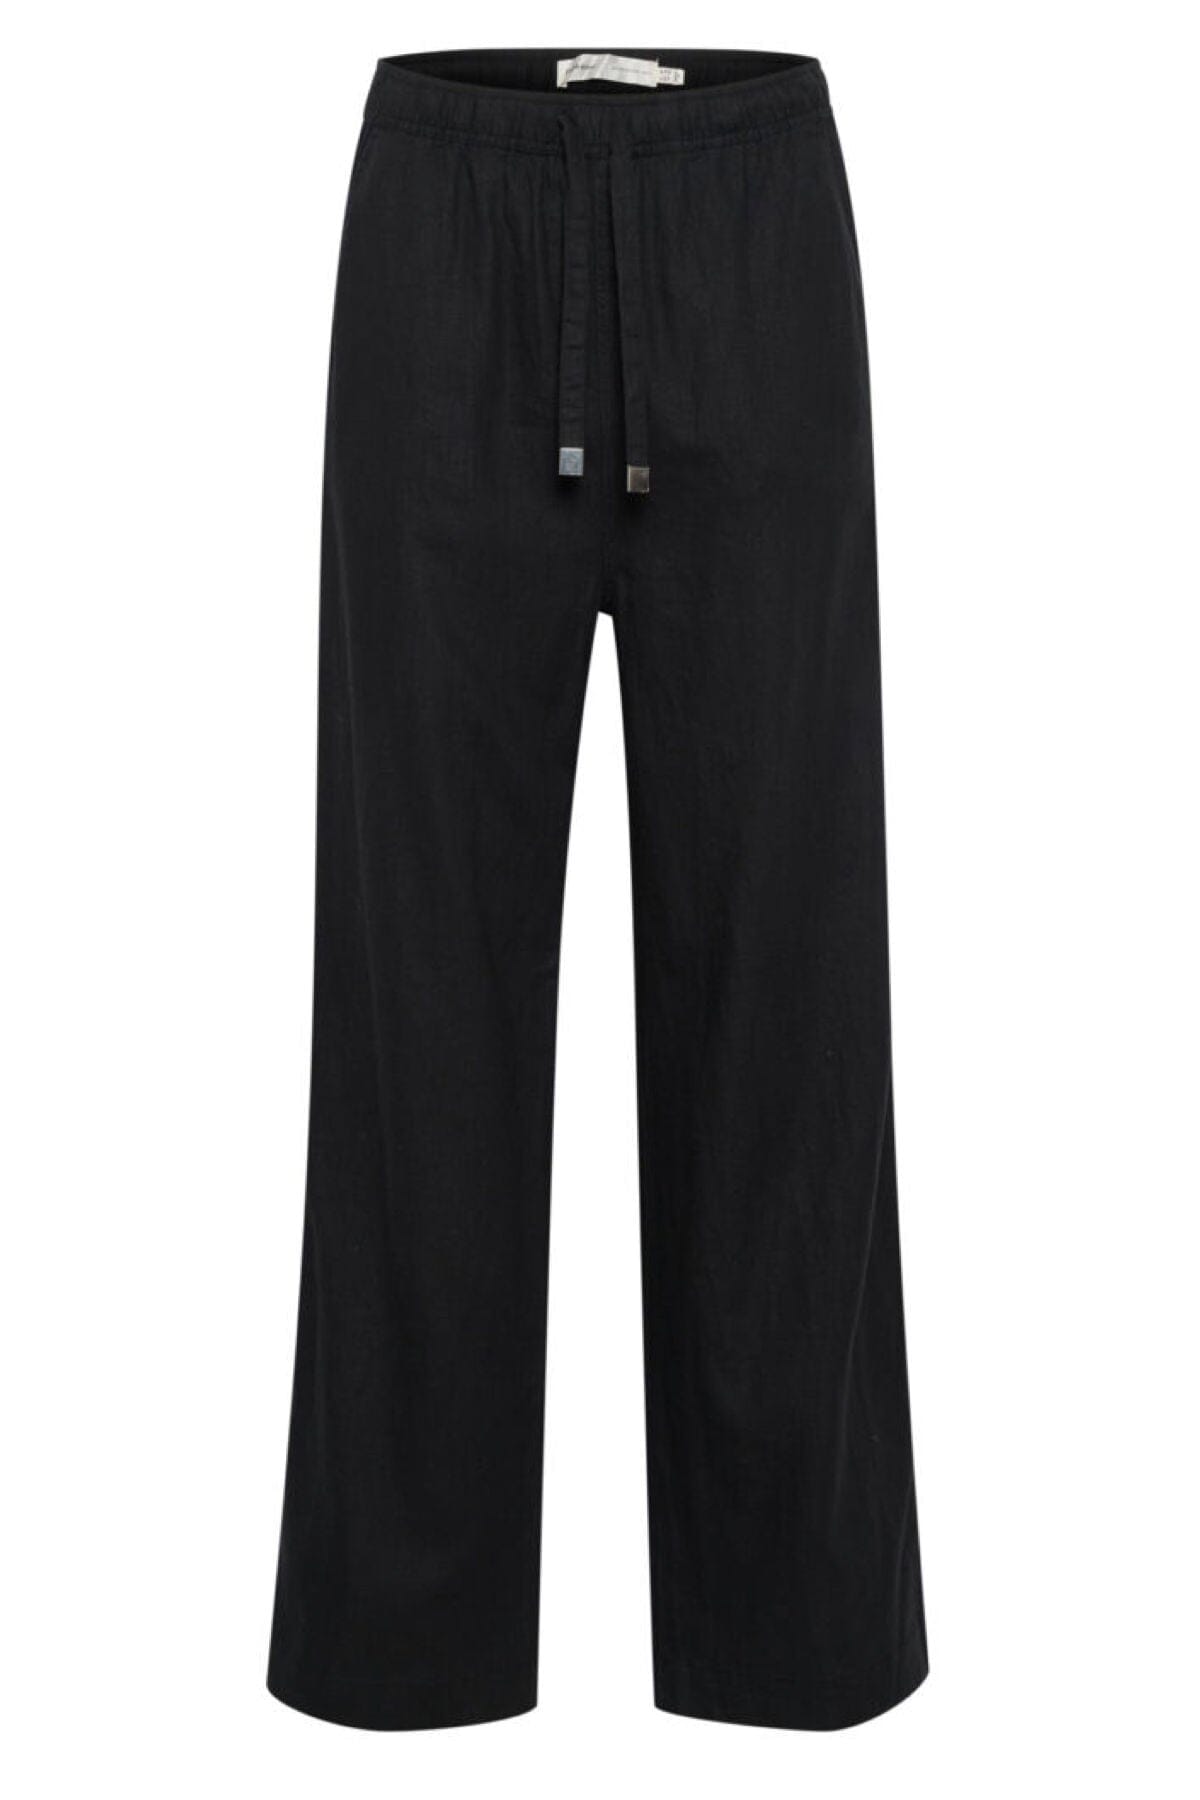 Pantalon léger Amos Inwear 34 Noir 